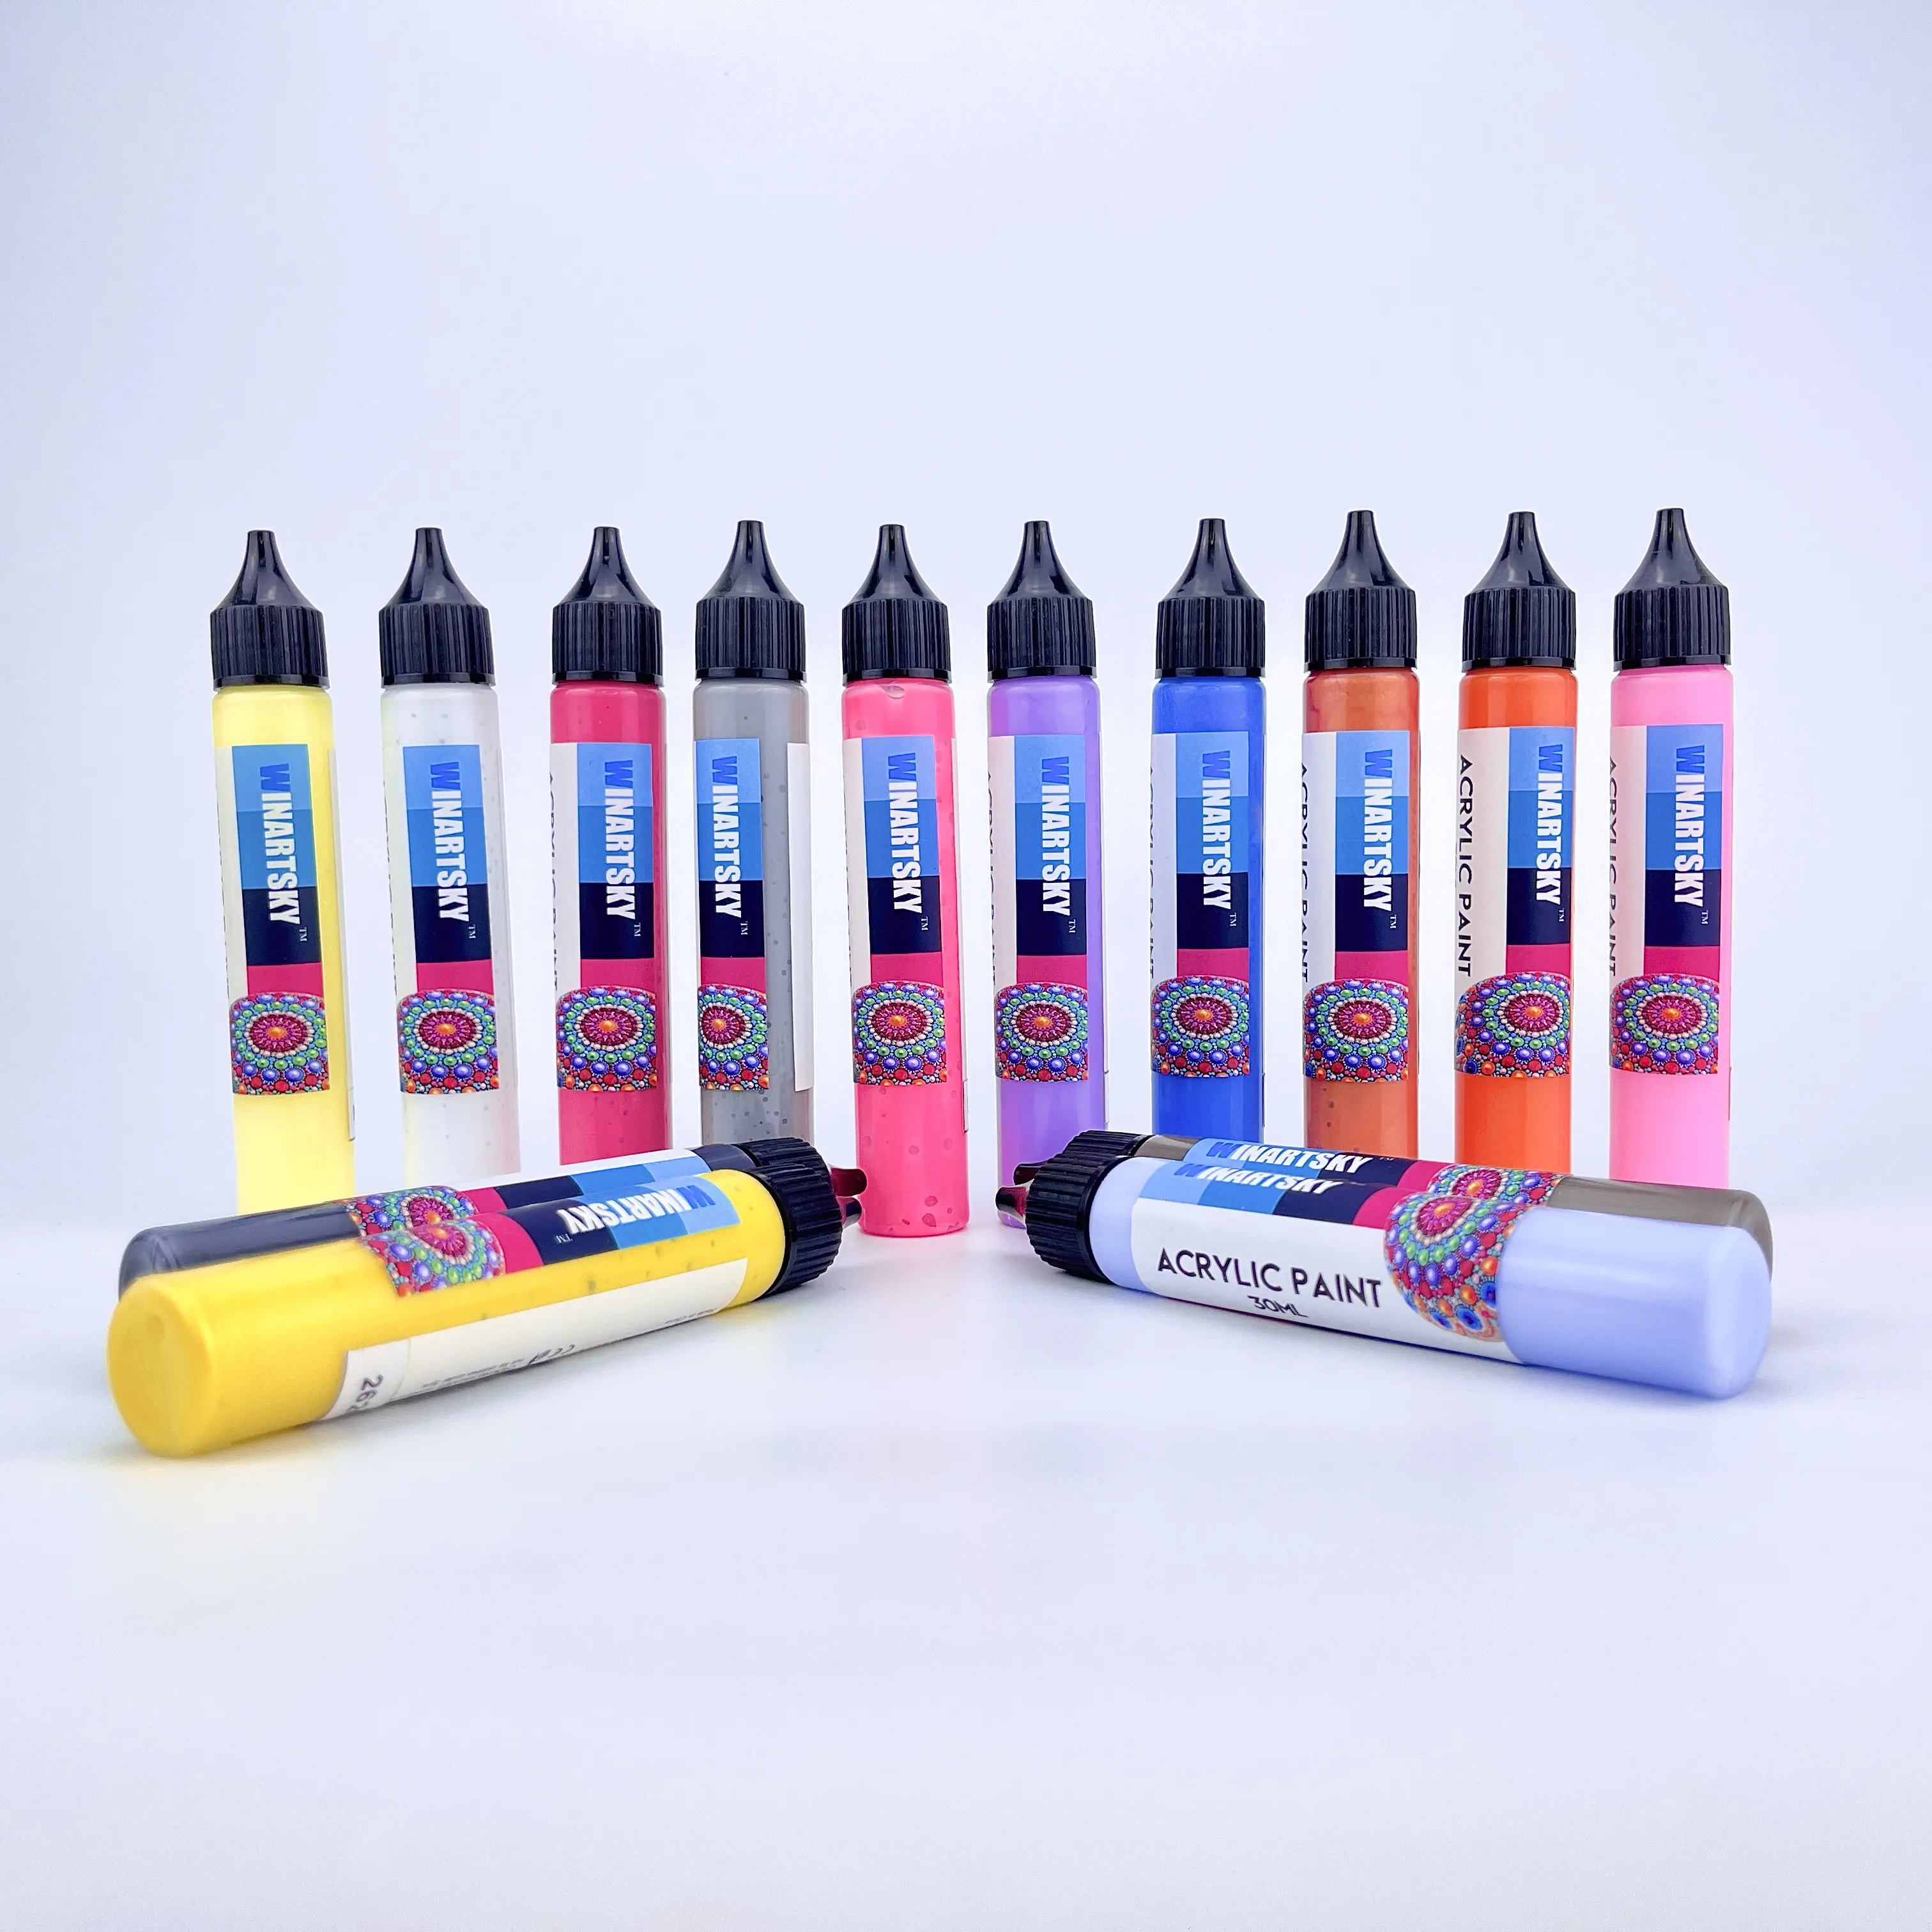 Sơn Acrylic đặt 30ml mỗi loại sơn thủ công không độc hại cho sơn thủ công tự làm